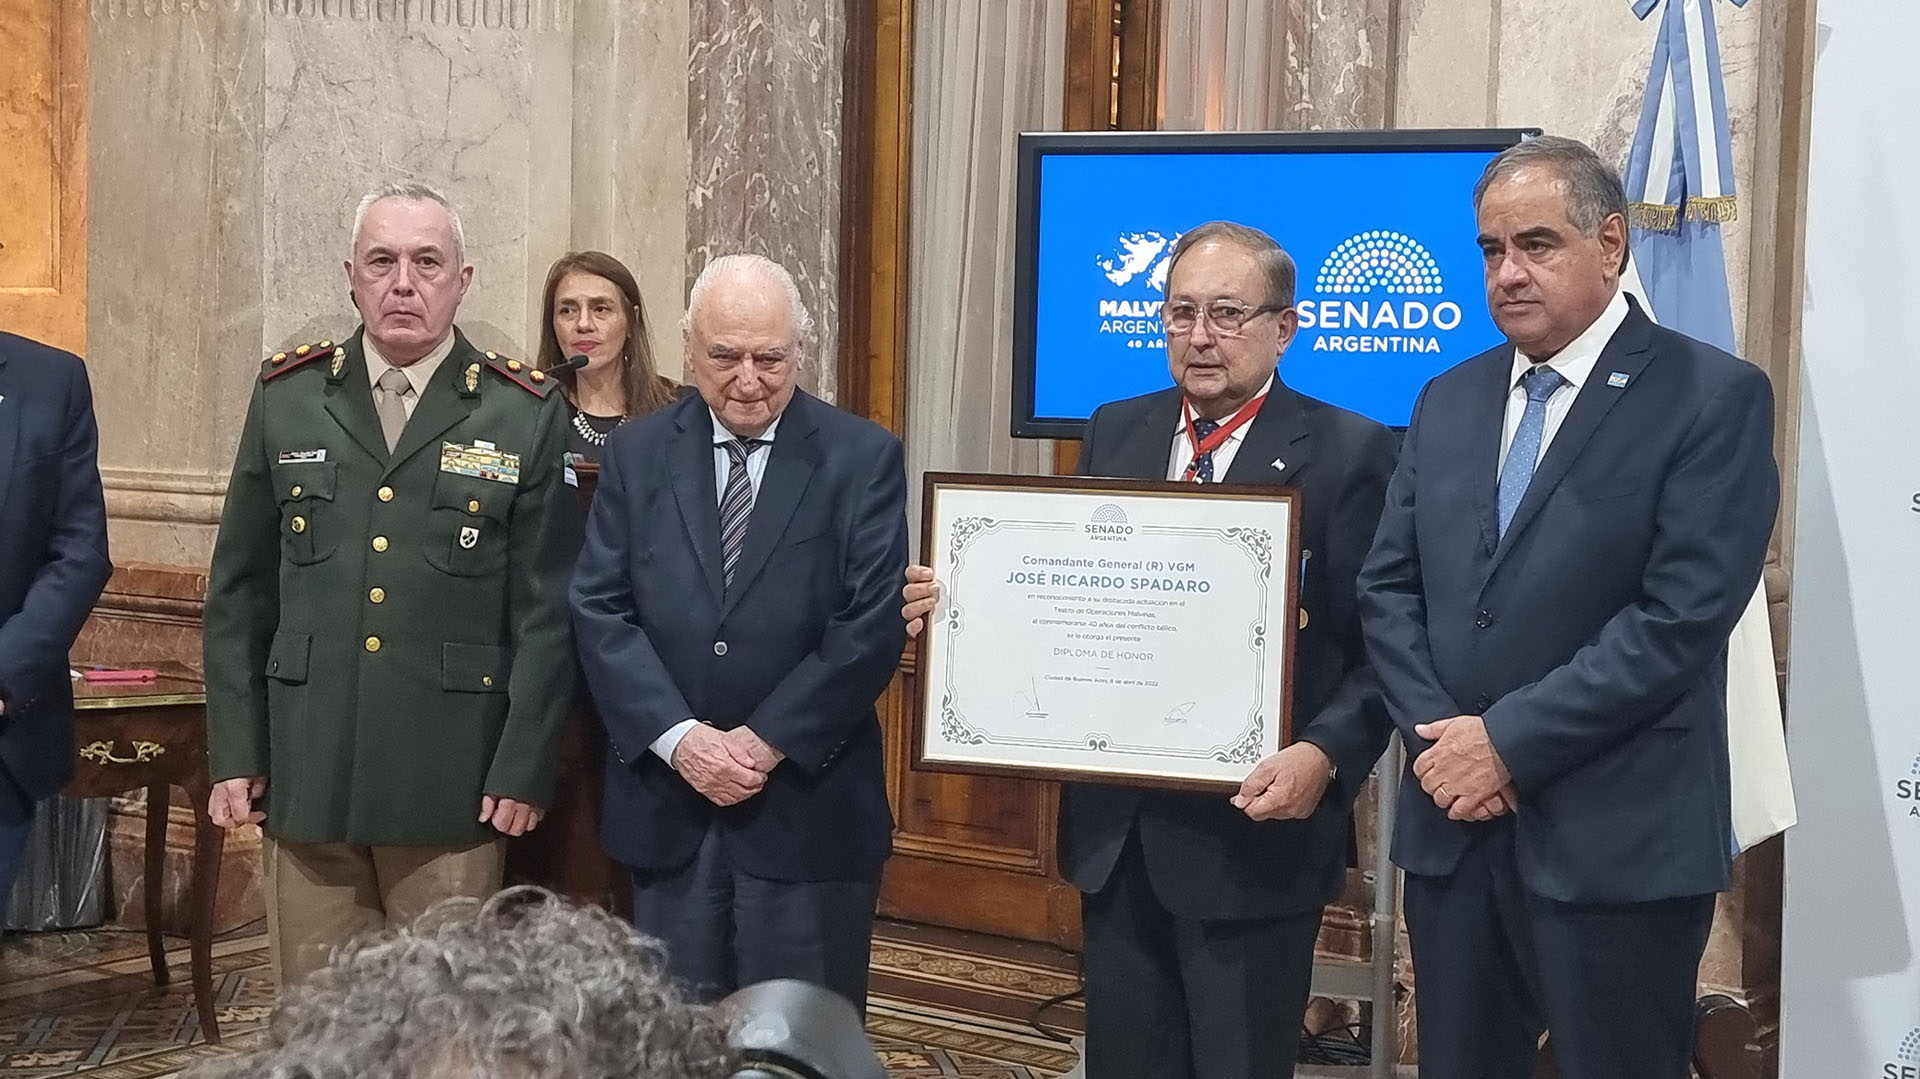 El comandante general de la Gendarmería Nacional, José Ricardo Spadaro, ex jefe del escuadrón “Alacrán” en Malvinas, con el diploma de reconocimiento a sus servicios en la guerra otorgado por el Senado de la Nación